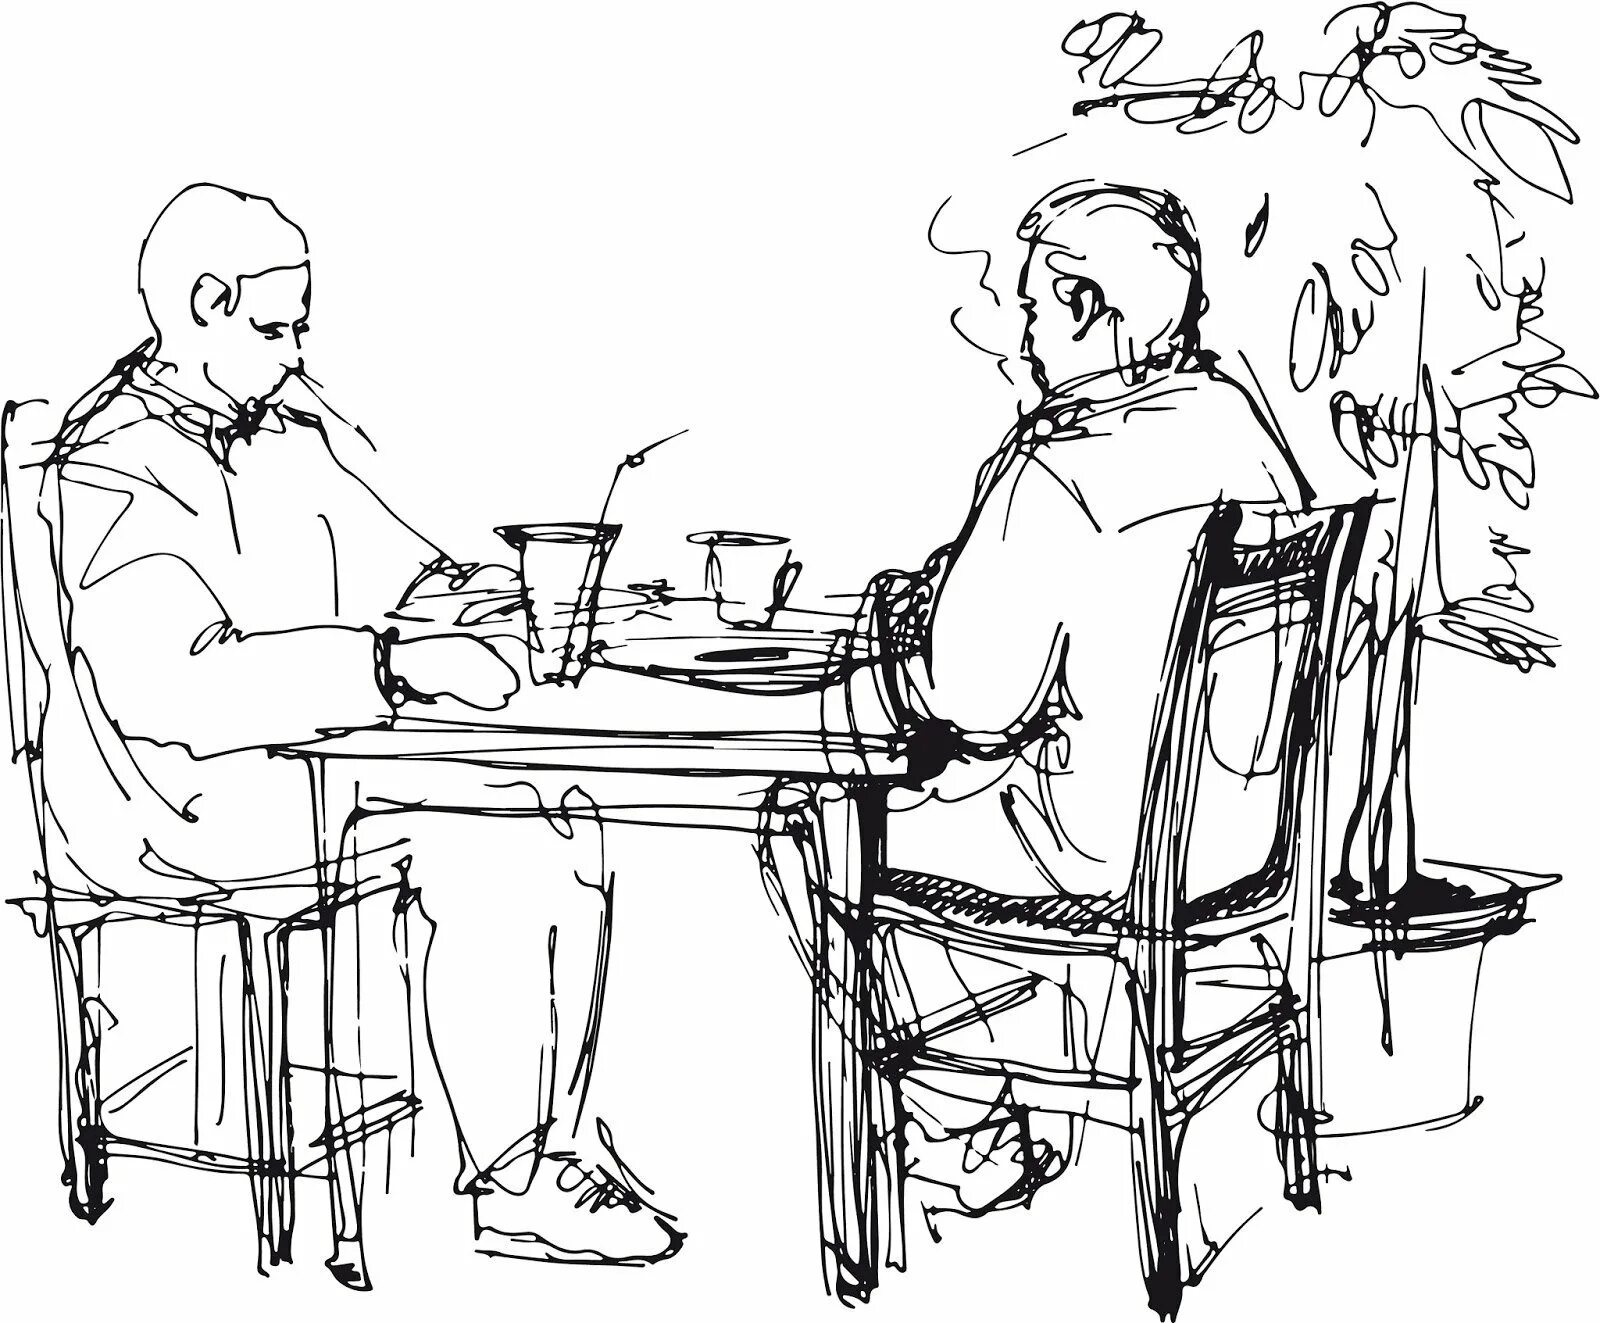 Давай в другой стол. Наброски людей в кафе. Человек сидит за столом. Человек карандашом за столом. Два человека сидят за столом.